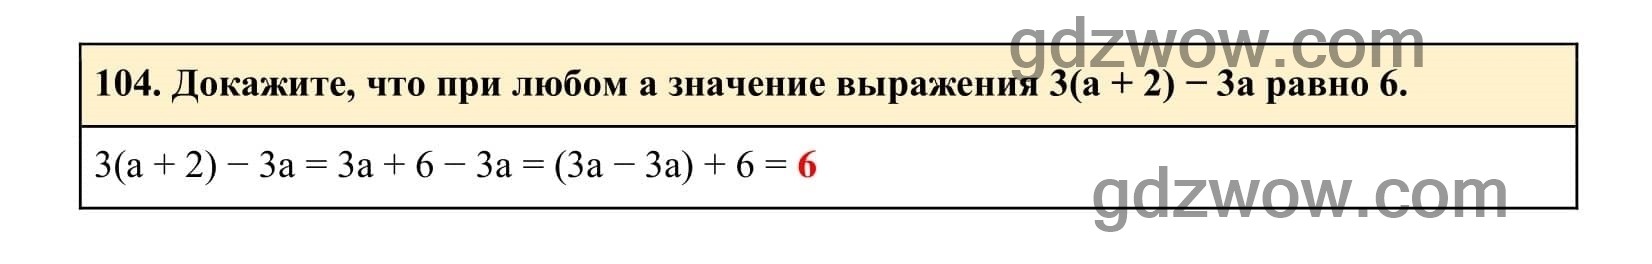 Упражнение 104 - ГДЗ по Алгебре 7 класс Учебник Макарычев (решебник) - GDZwow